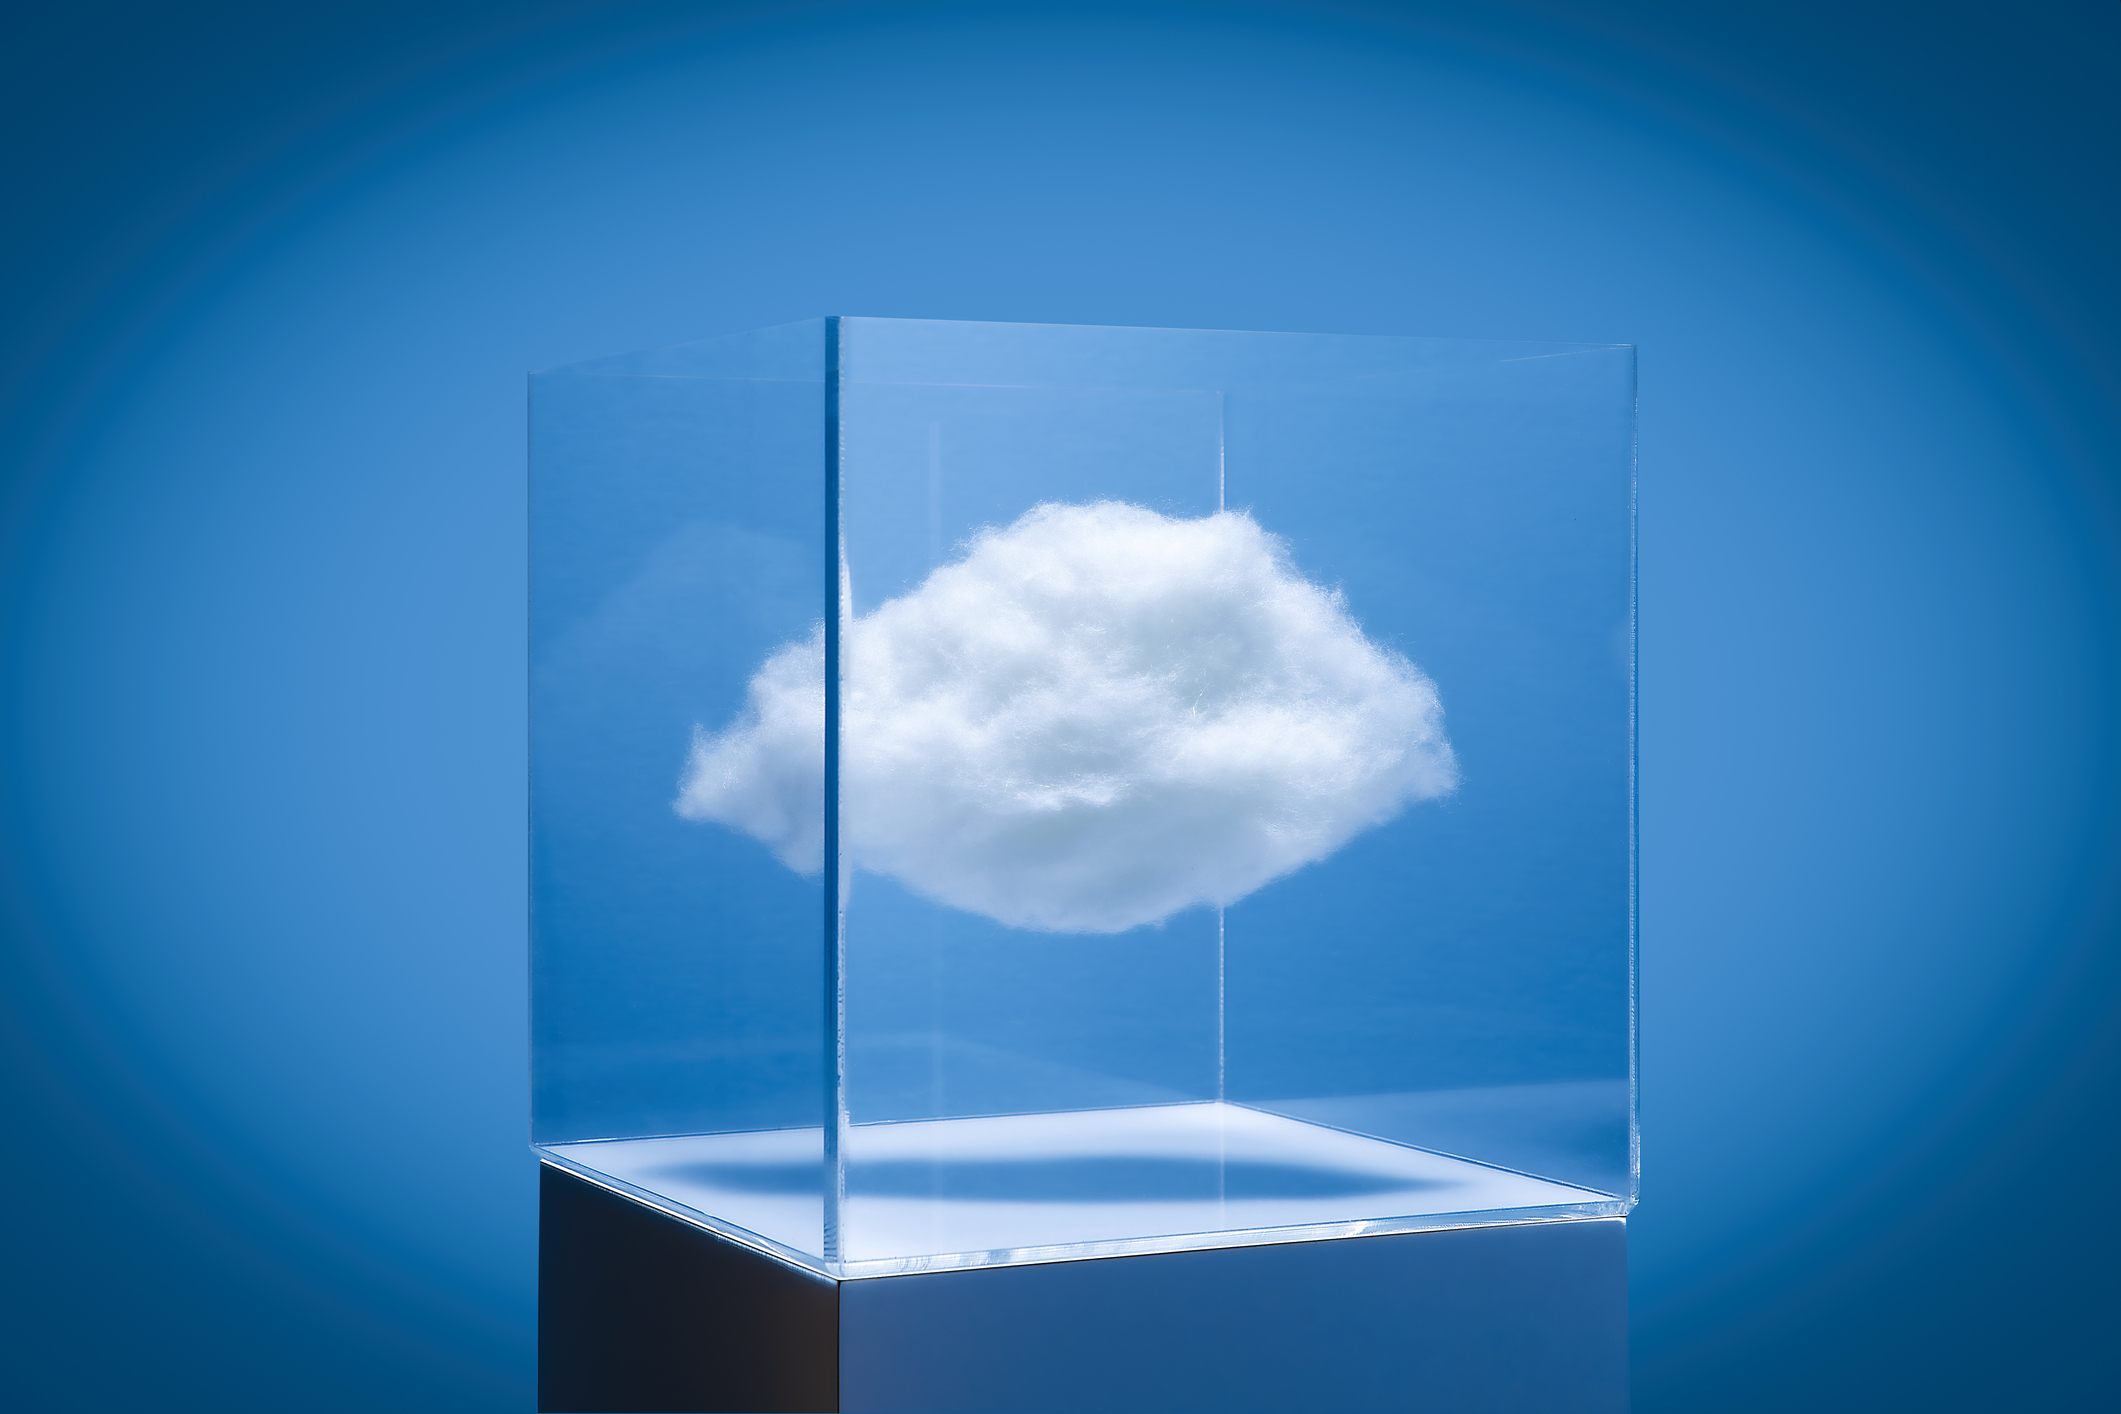 Cloud in a box